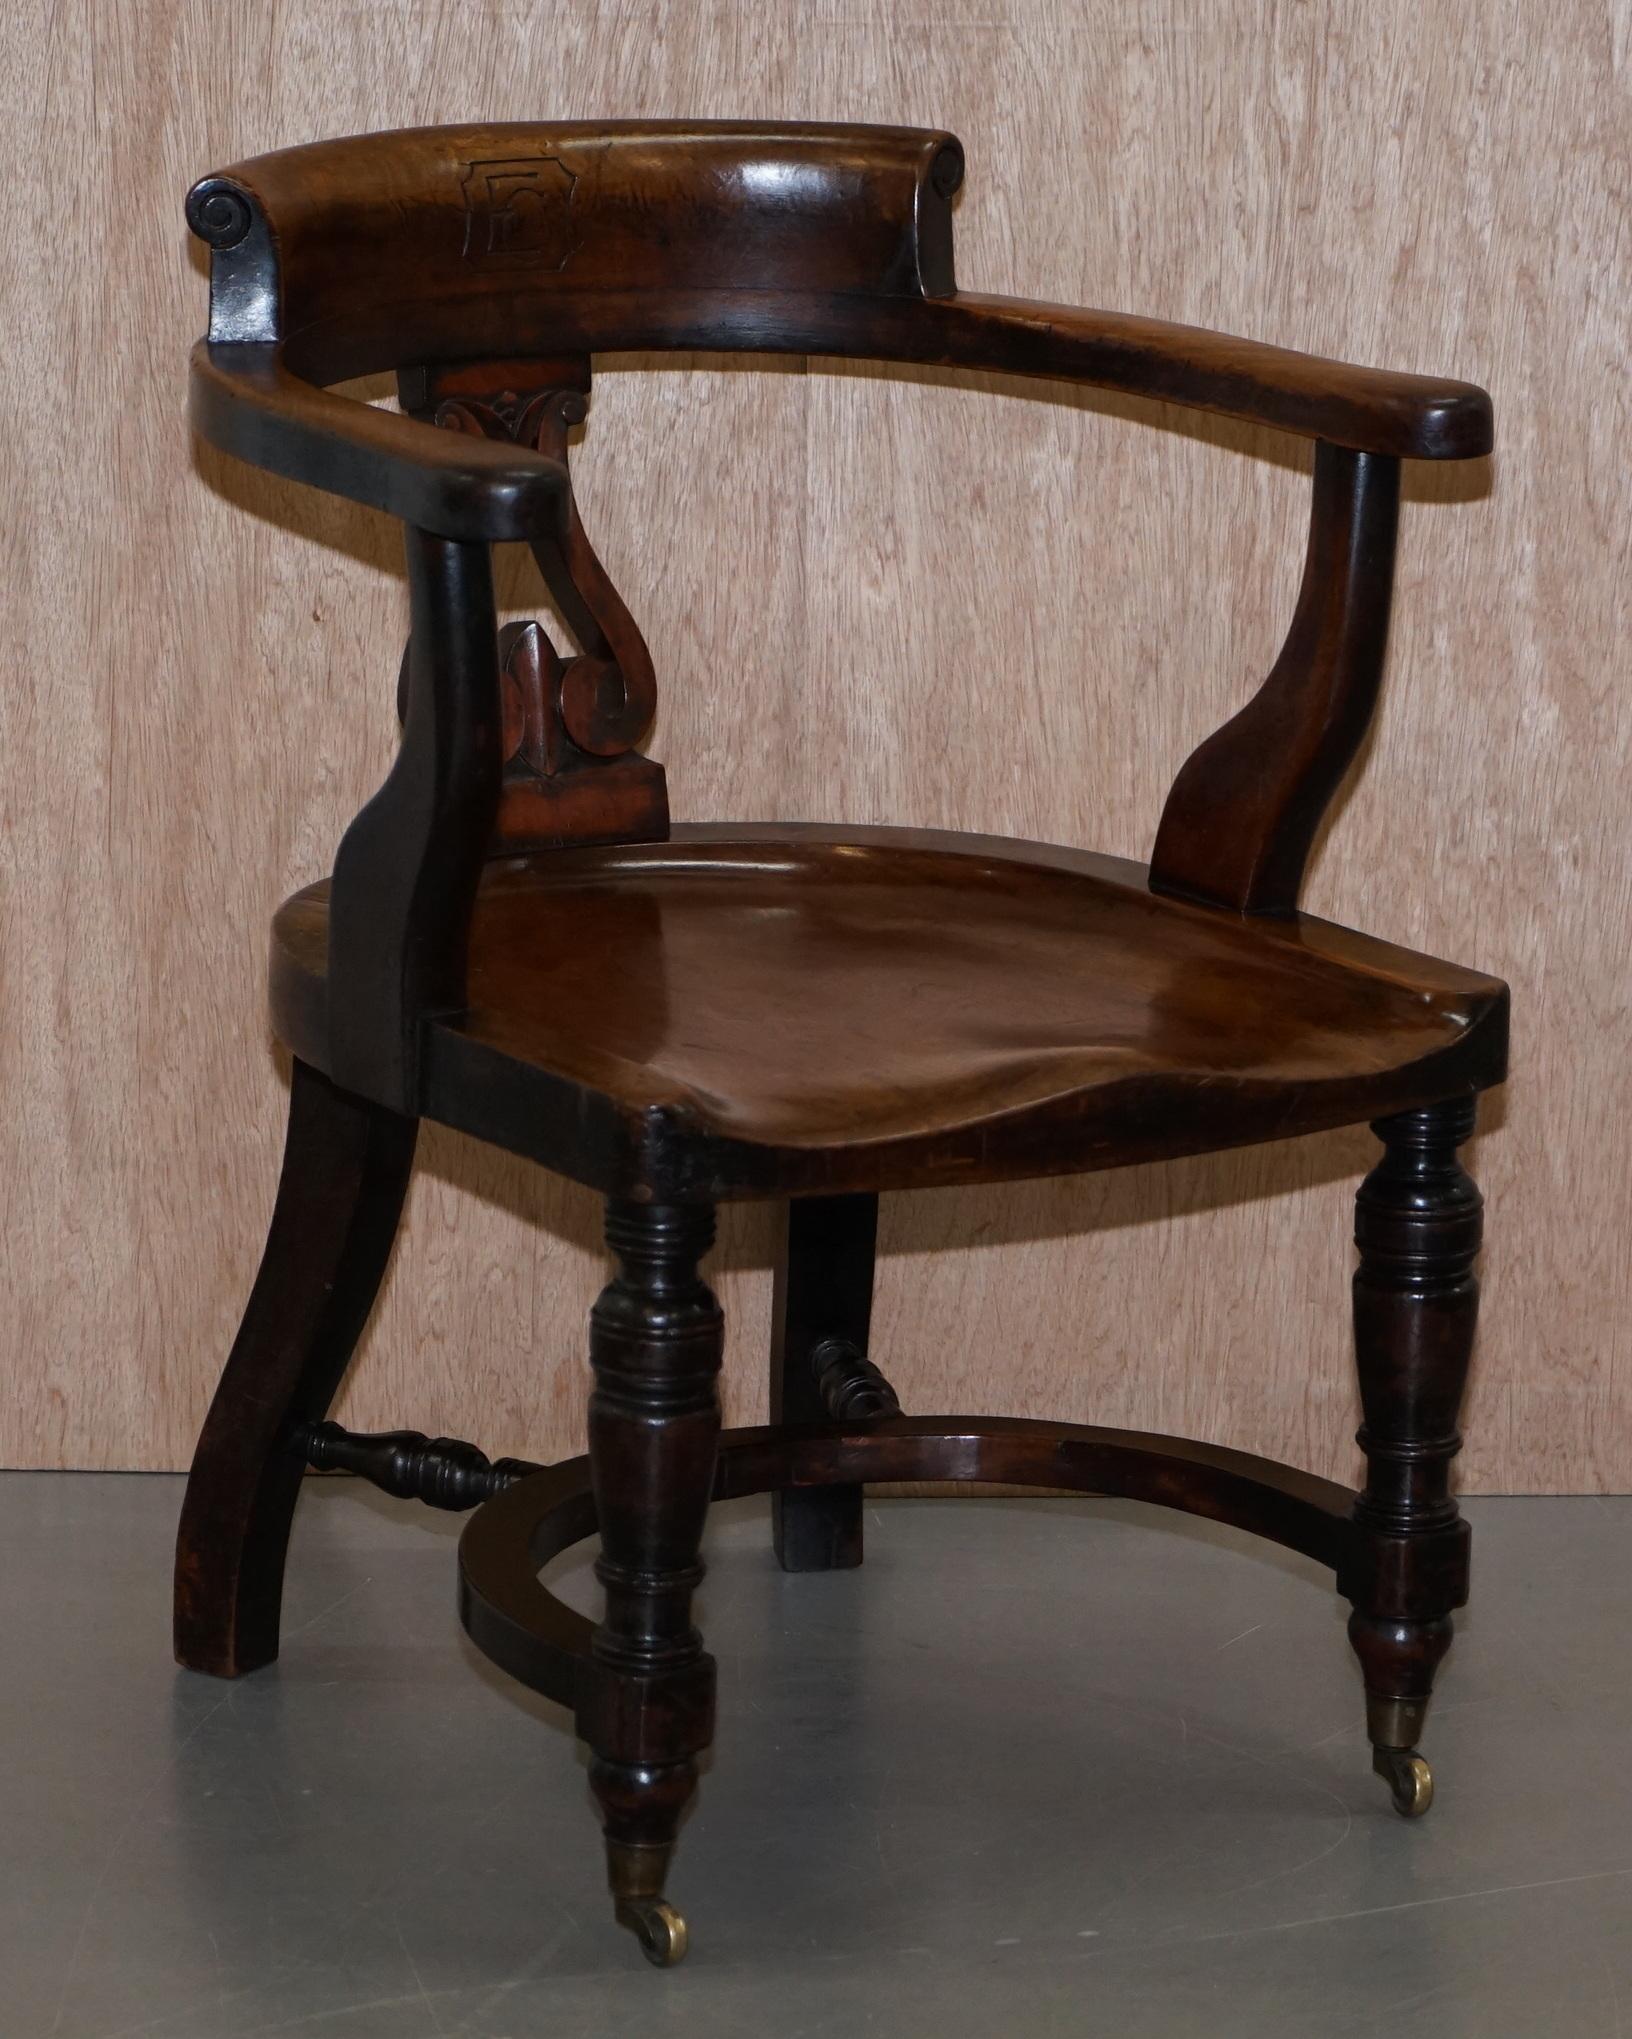 Wir freuen uns, diese atemberaubende und wichtige Suite von sechs originalen viktorianischen Eton College Kapitänsstühlen aus Nussbaumholz zum Verkauf anbieten zu können, wobei jeder Stuhl mit EC in der Rückenlehne geschnitzt ist.

Ein